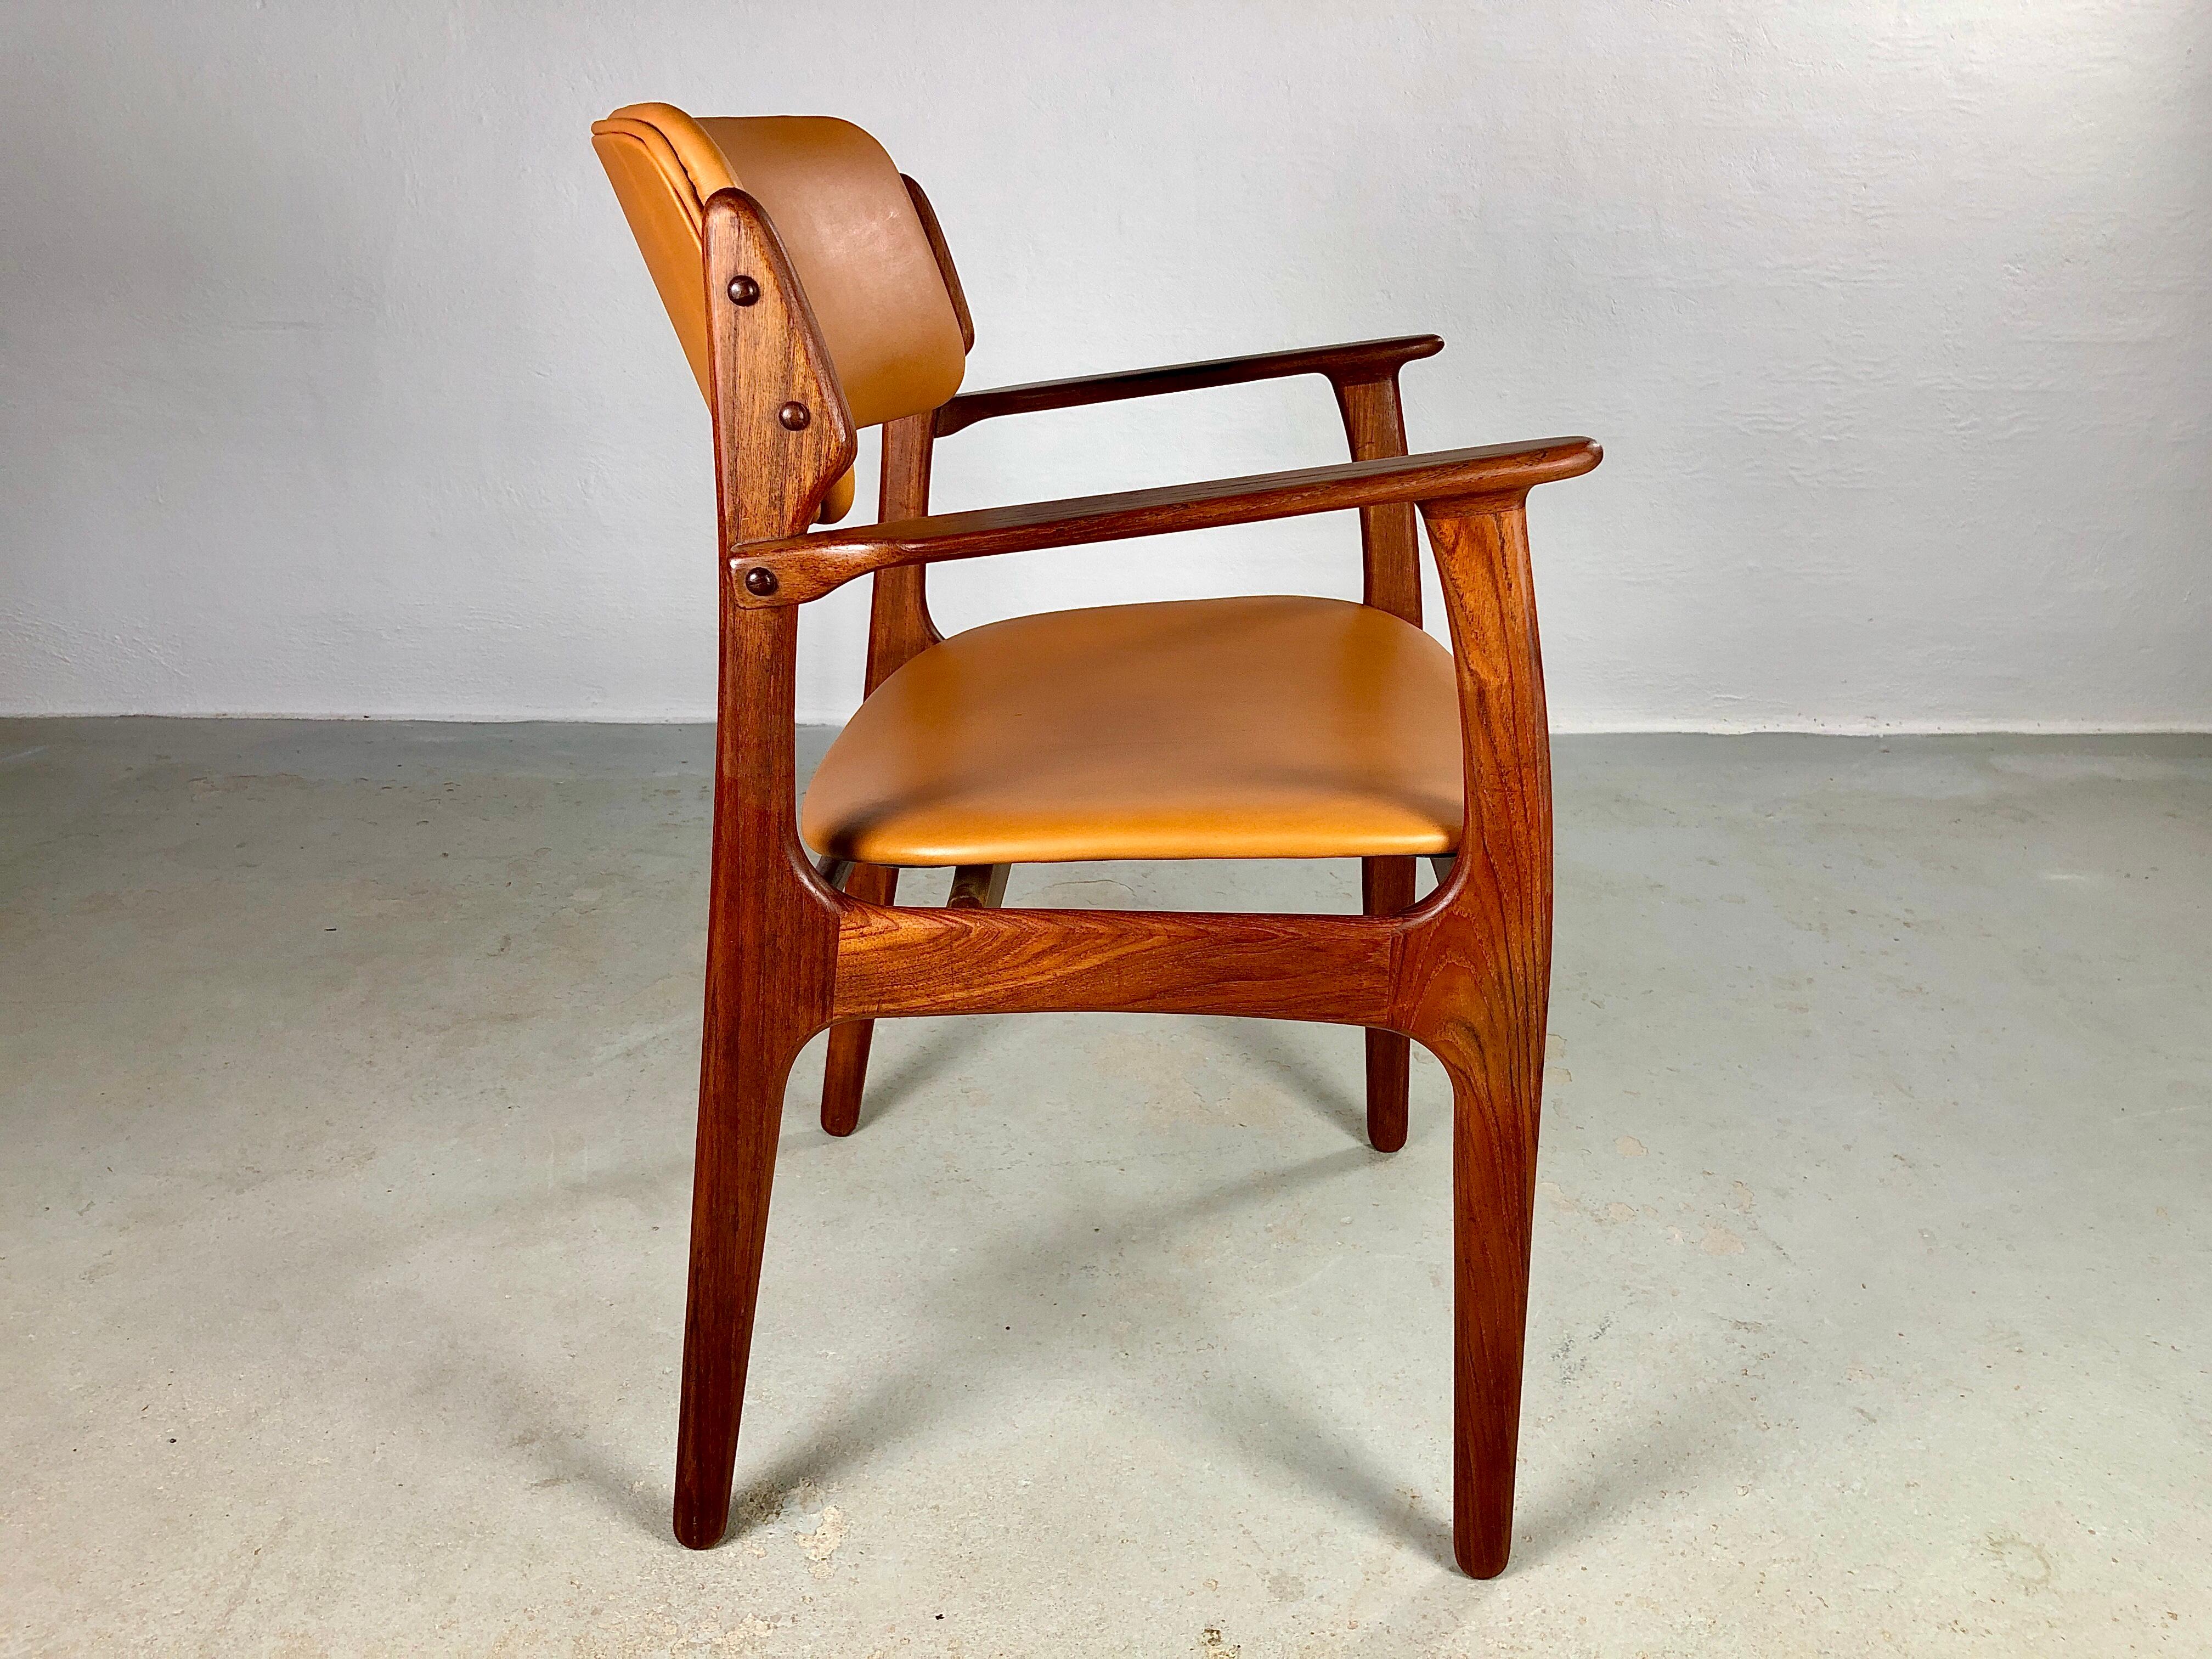 Les fauteuils en teck d'Erik Buch, entièrement restaurés et dotés d'un excellent travail du bois, témoignent de la qualité du design et de l'artisanat danois du milieu du siècle dernier.

Les chaises sont en teck massif, avec l'assise flottante et